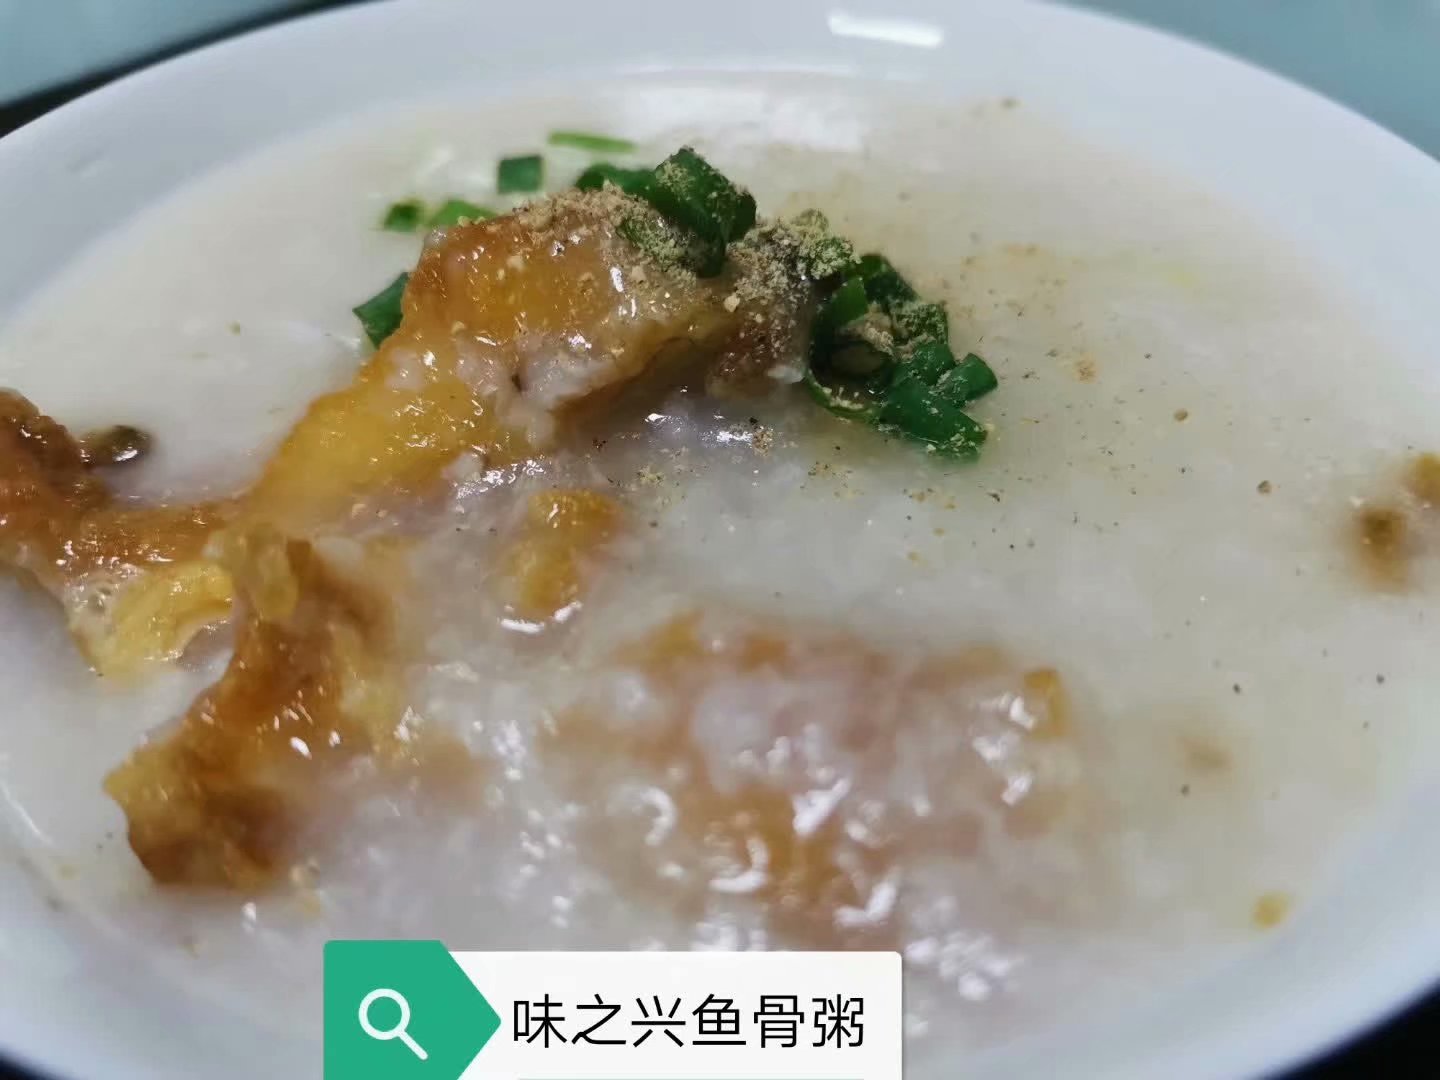 在广州哪里可以学习早餐生滚粥